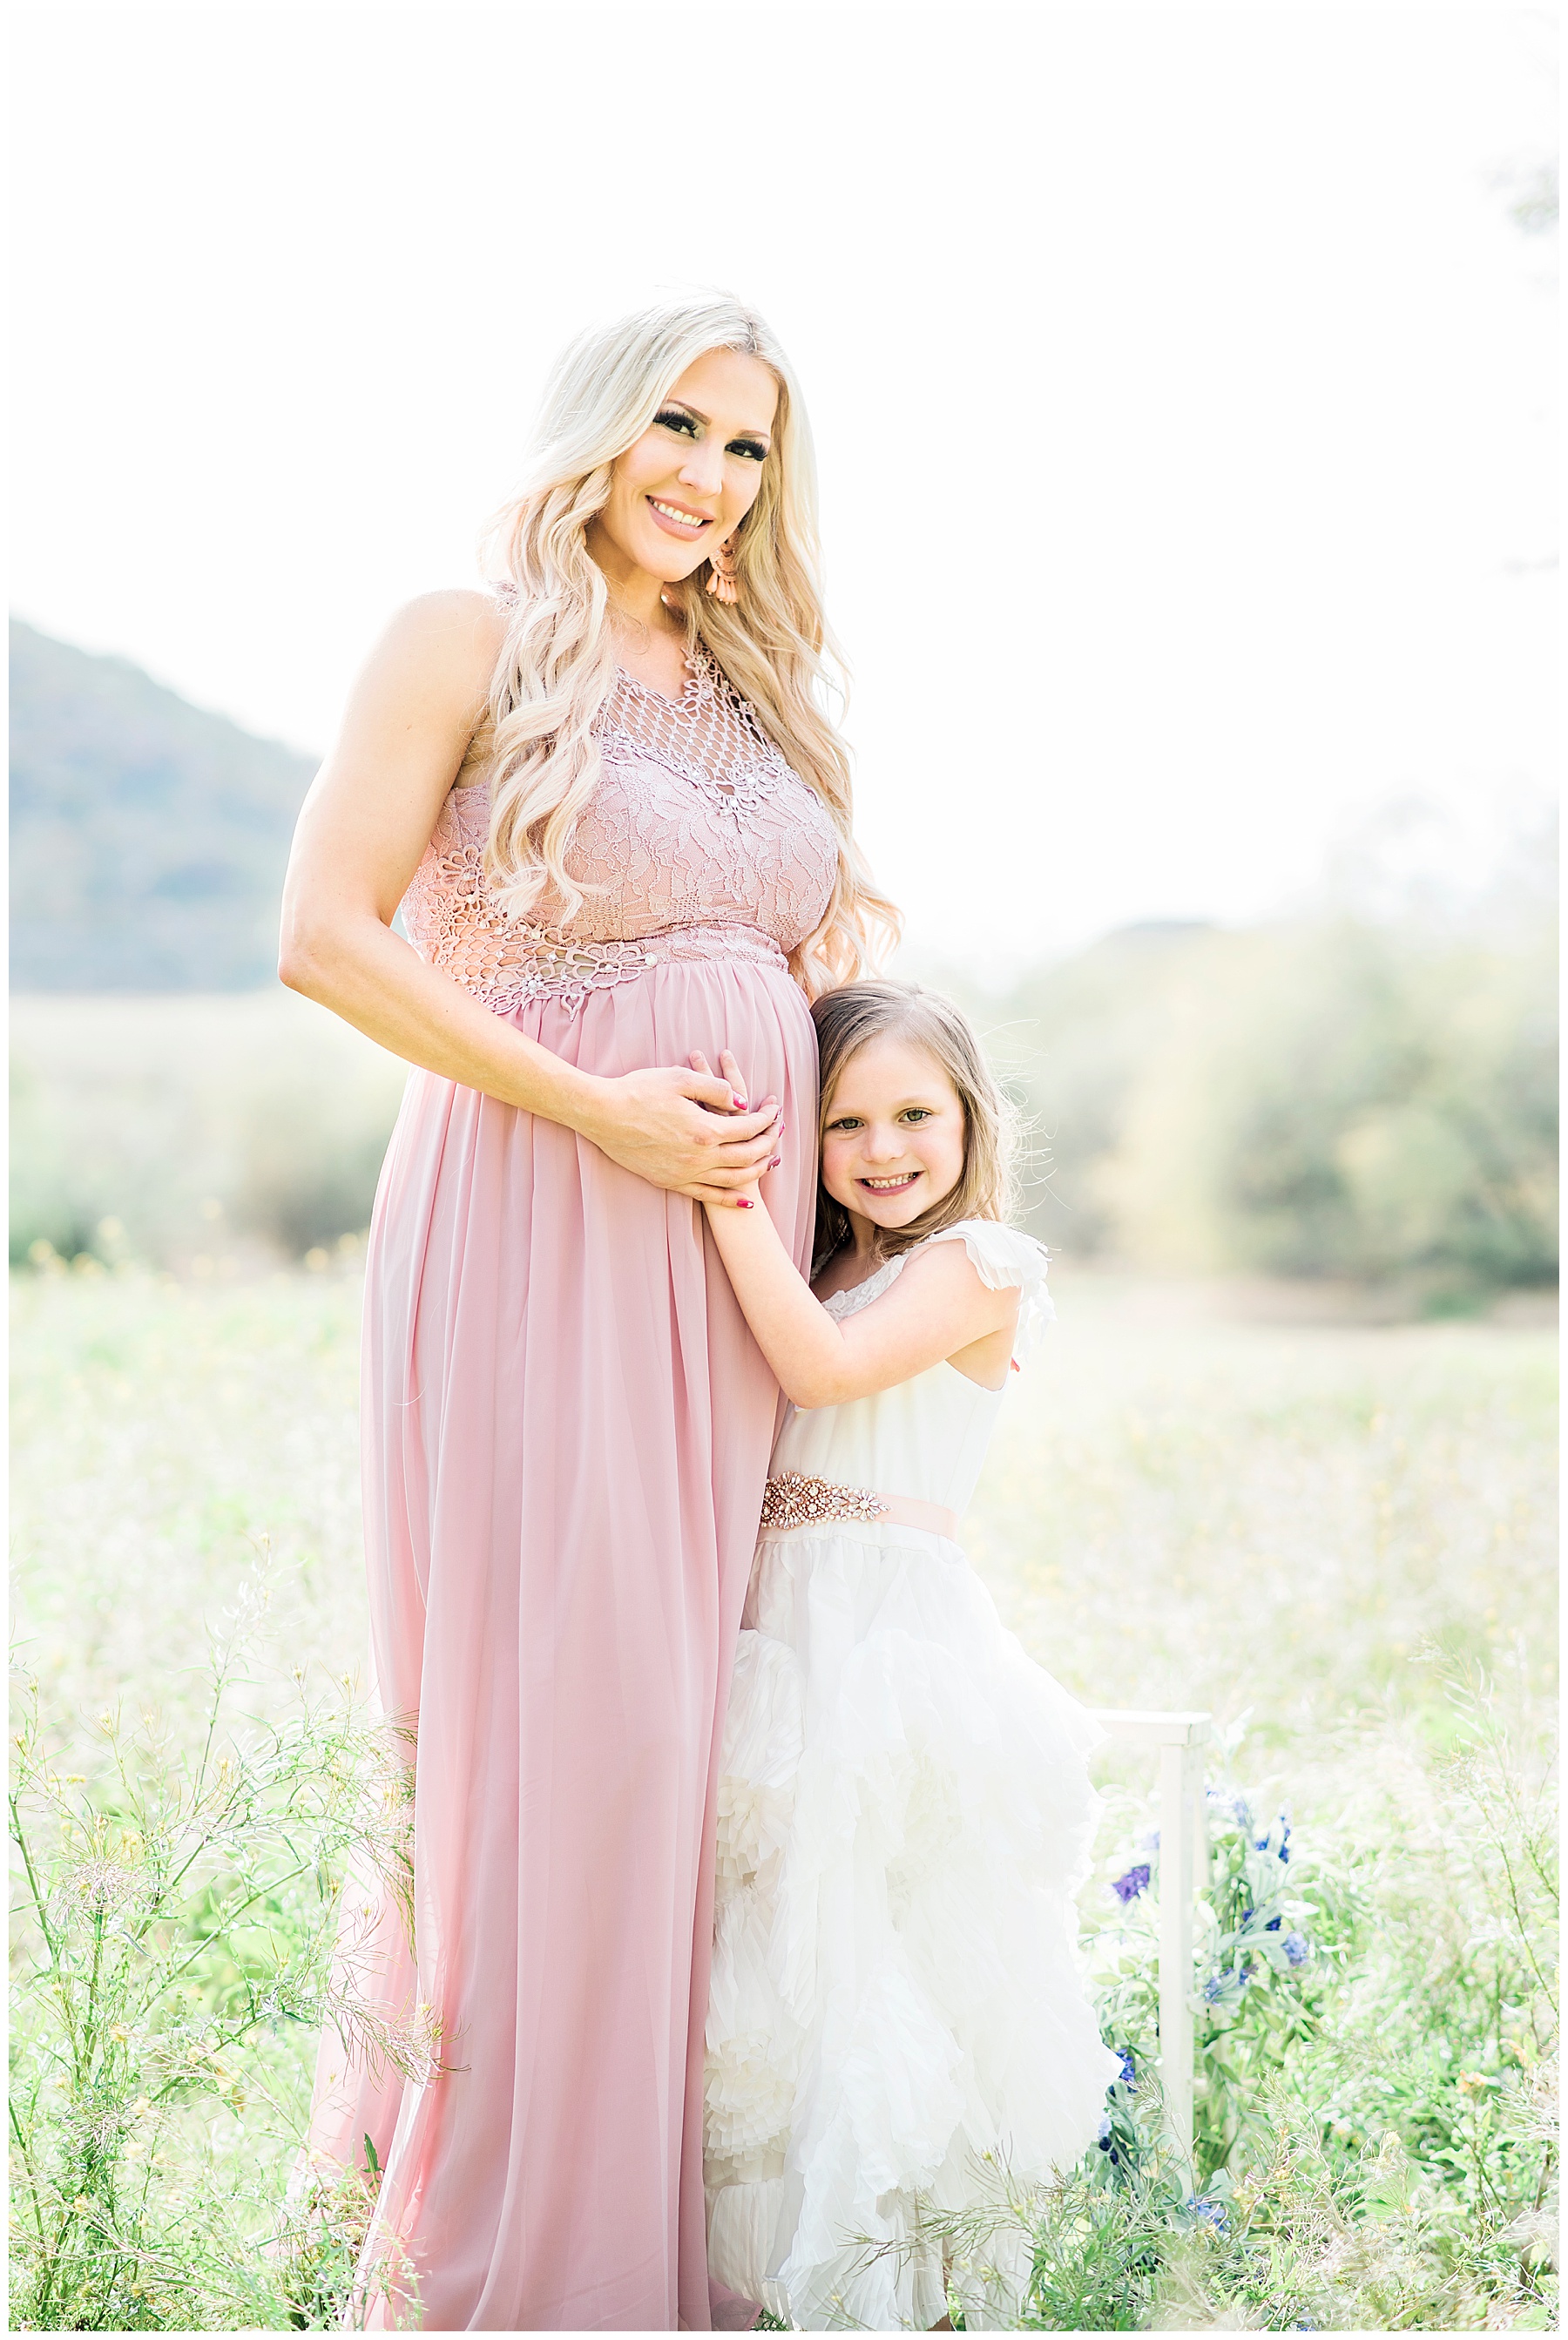 Cooper's-Family-Maternity-Photography-Glendale-Arizona-Ashley-Flug-Photography04.jpg